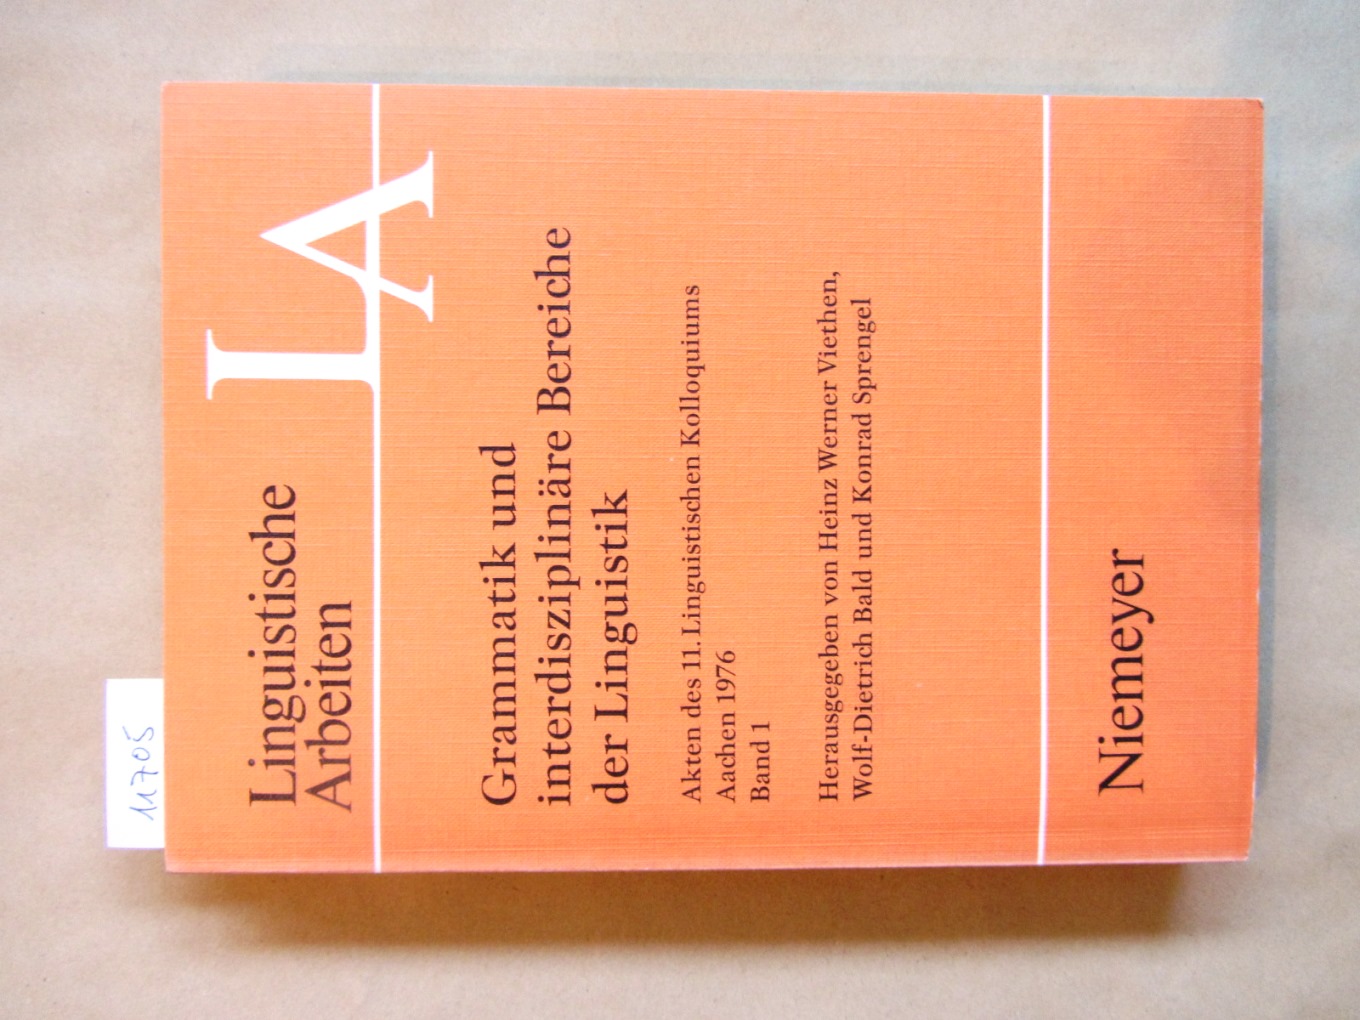 Grammatik interdisziplinäre Bereiche der Linguistik. Akten des 11. Linguistischen Kolloquiums, Aachen 1976, Band 1 apart. (